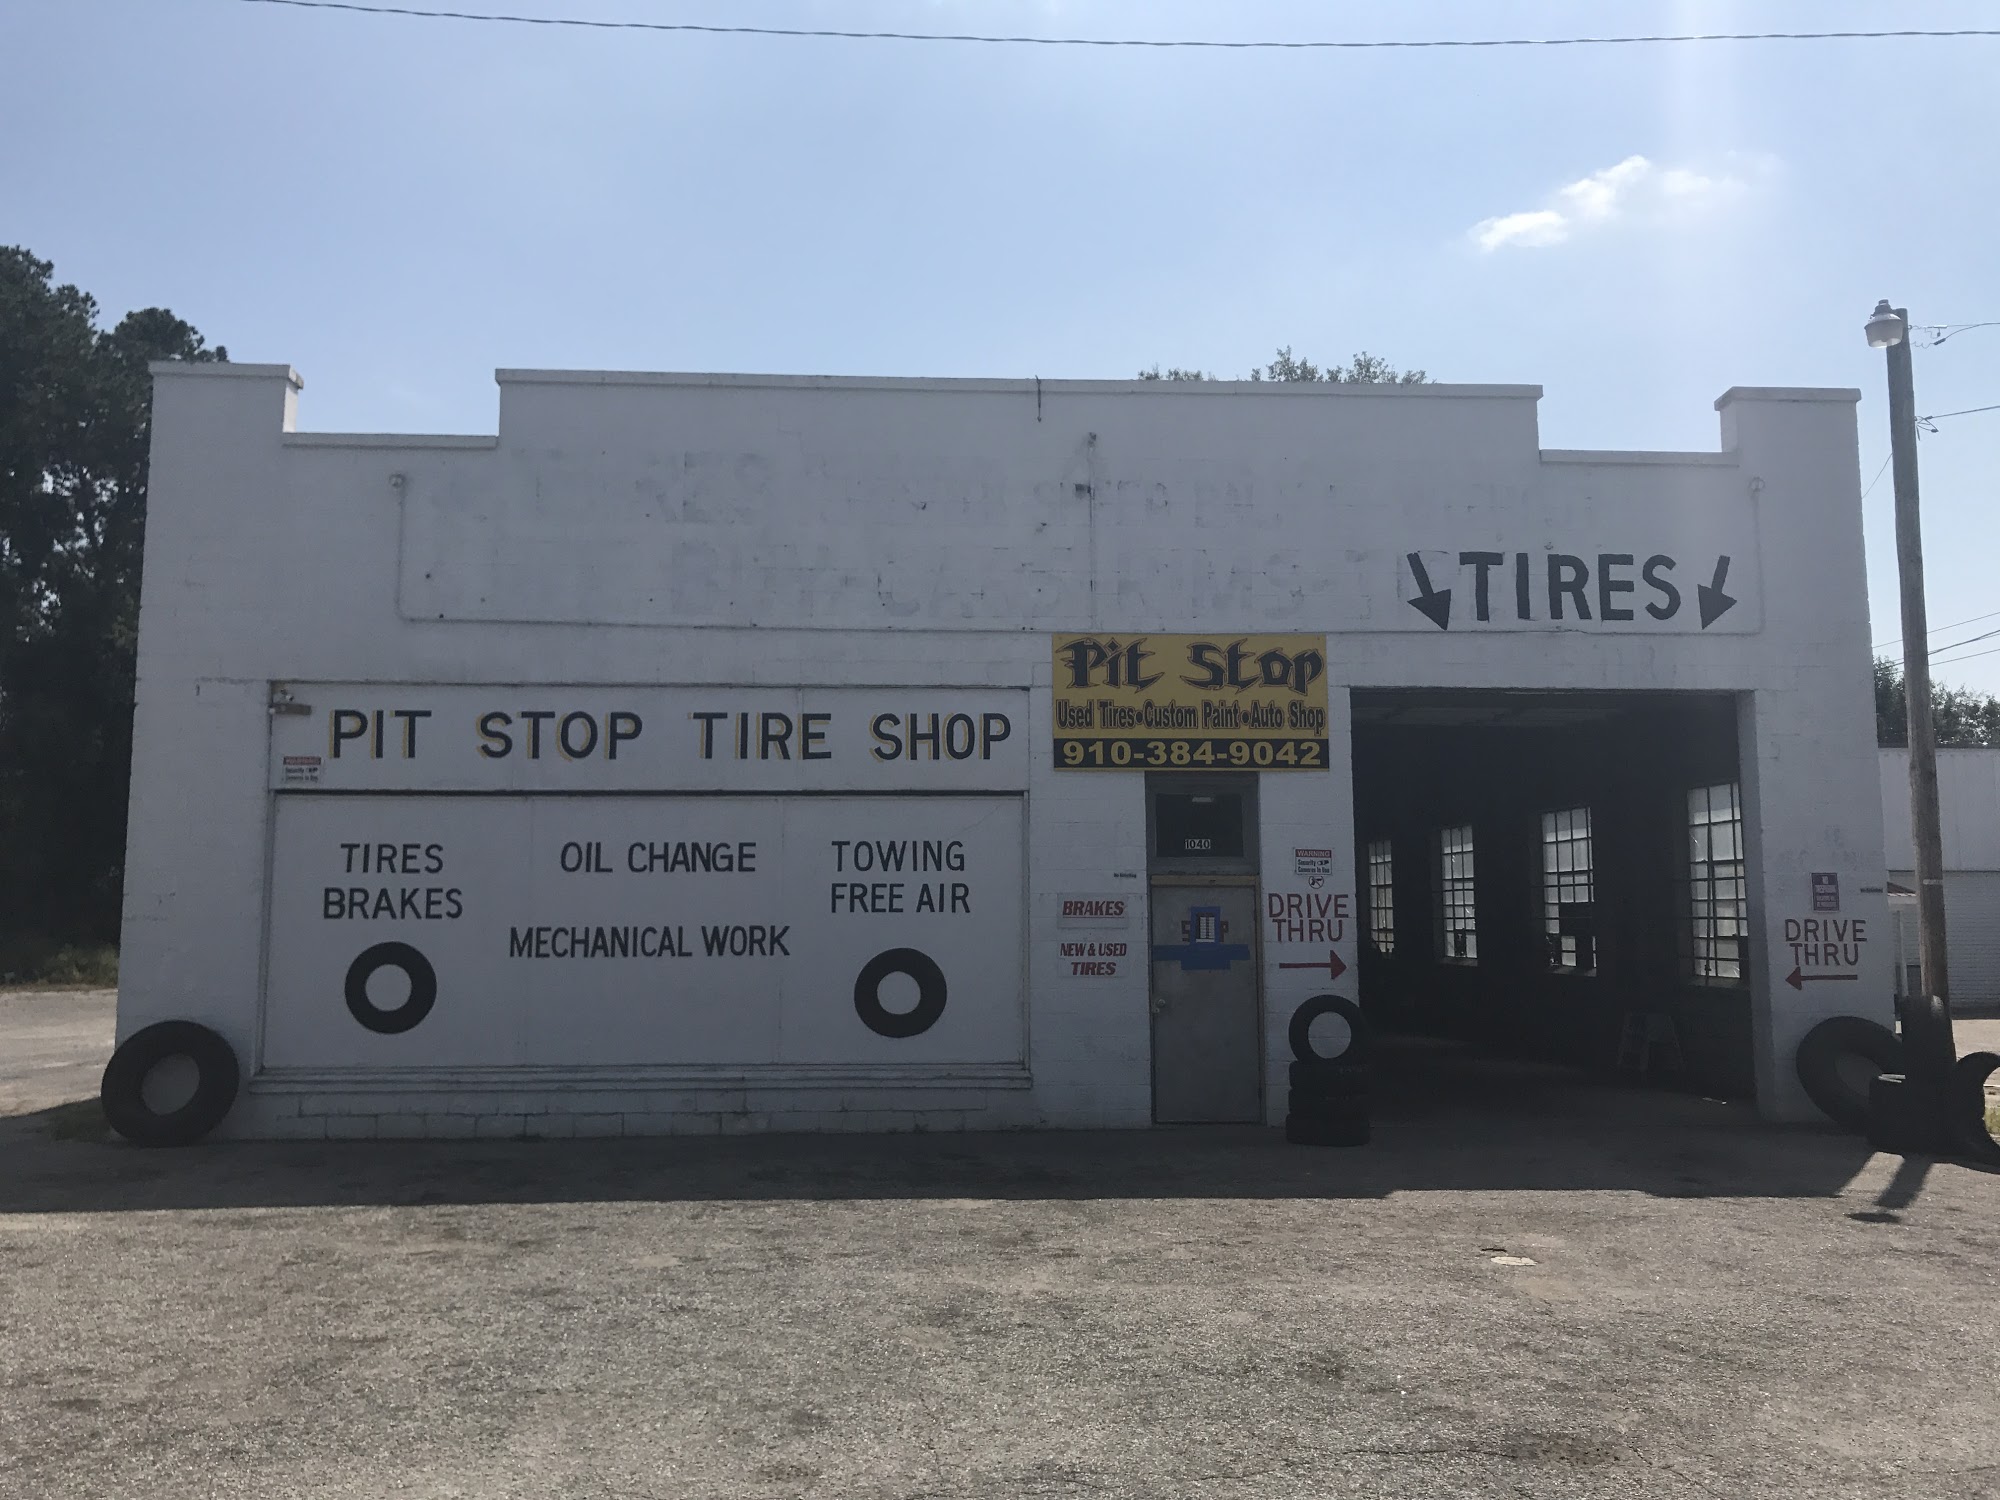 Pit Stop Tire Shop